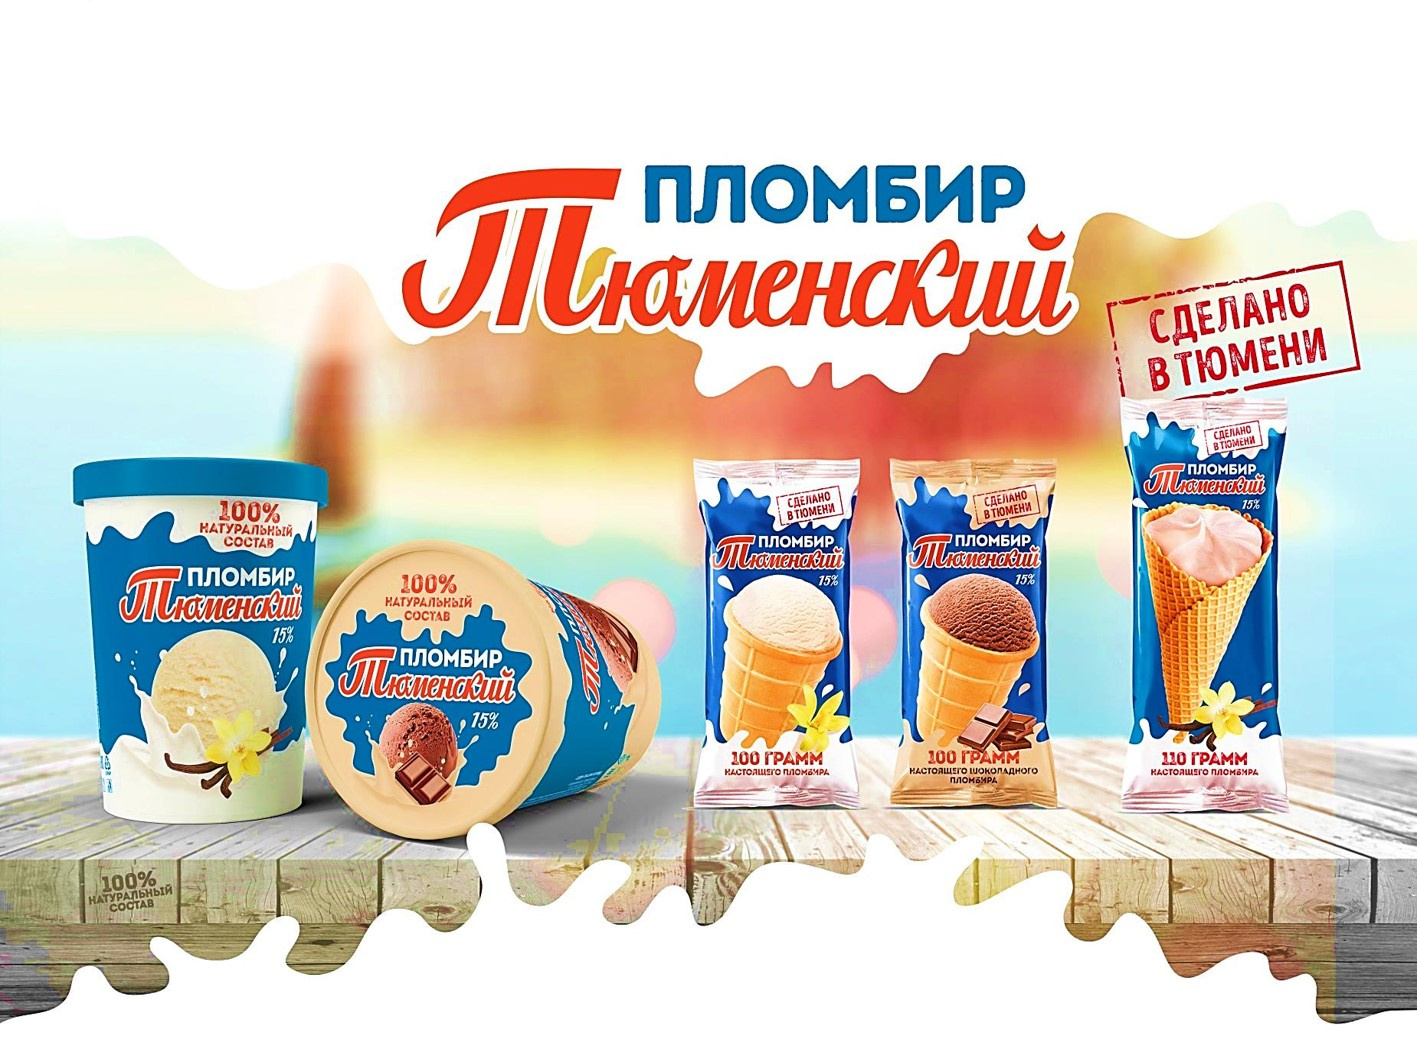 Тюменское Мороженое